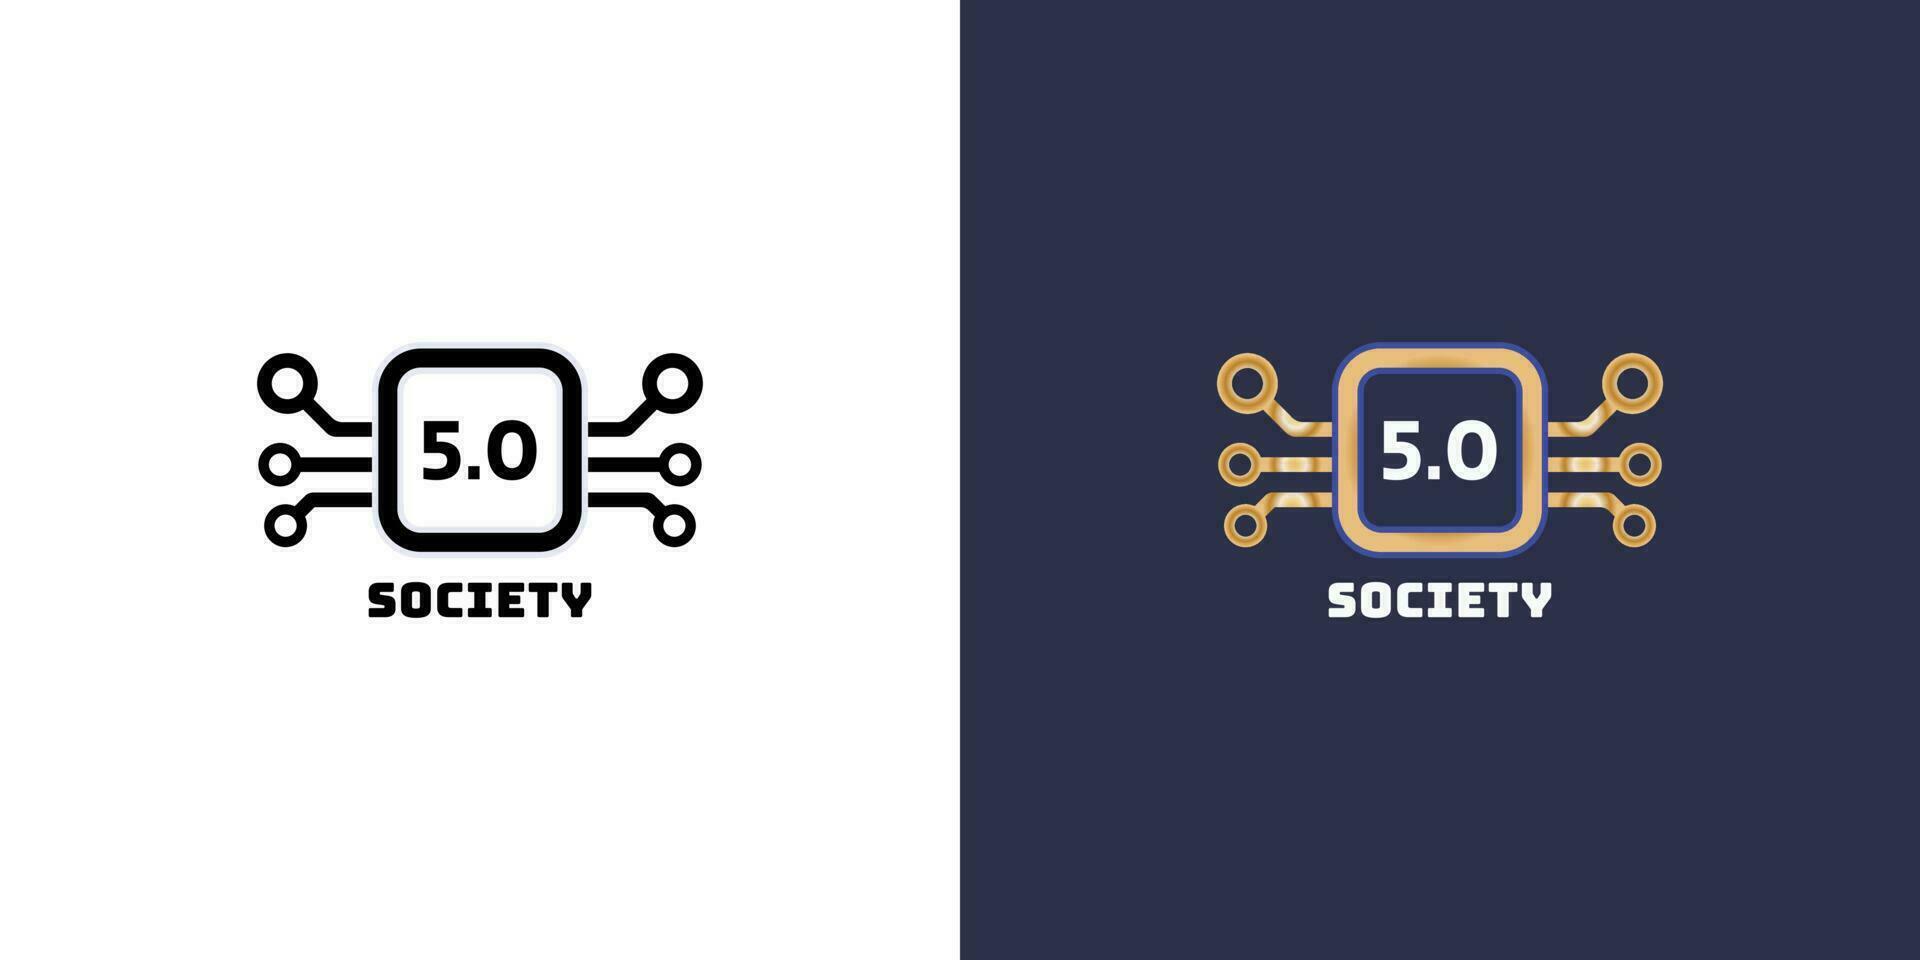 sociedad 5.0 logo diseño en diferente color colocar. sostenible tecnológico desarrollos en industria 5.0 vector